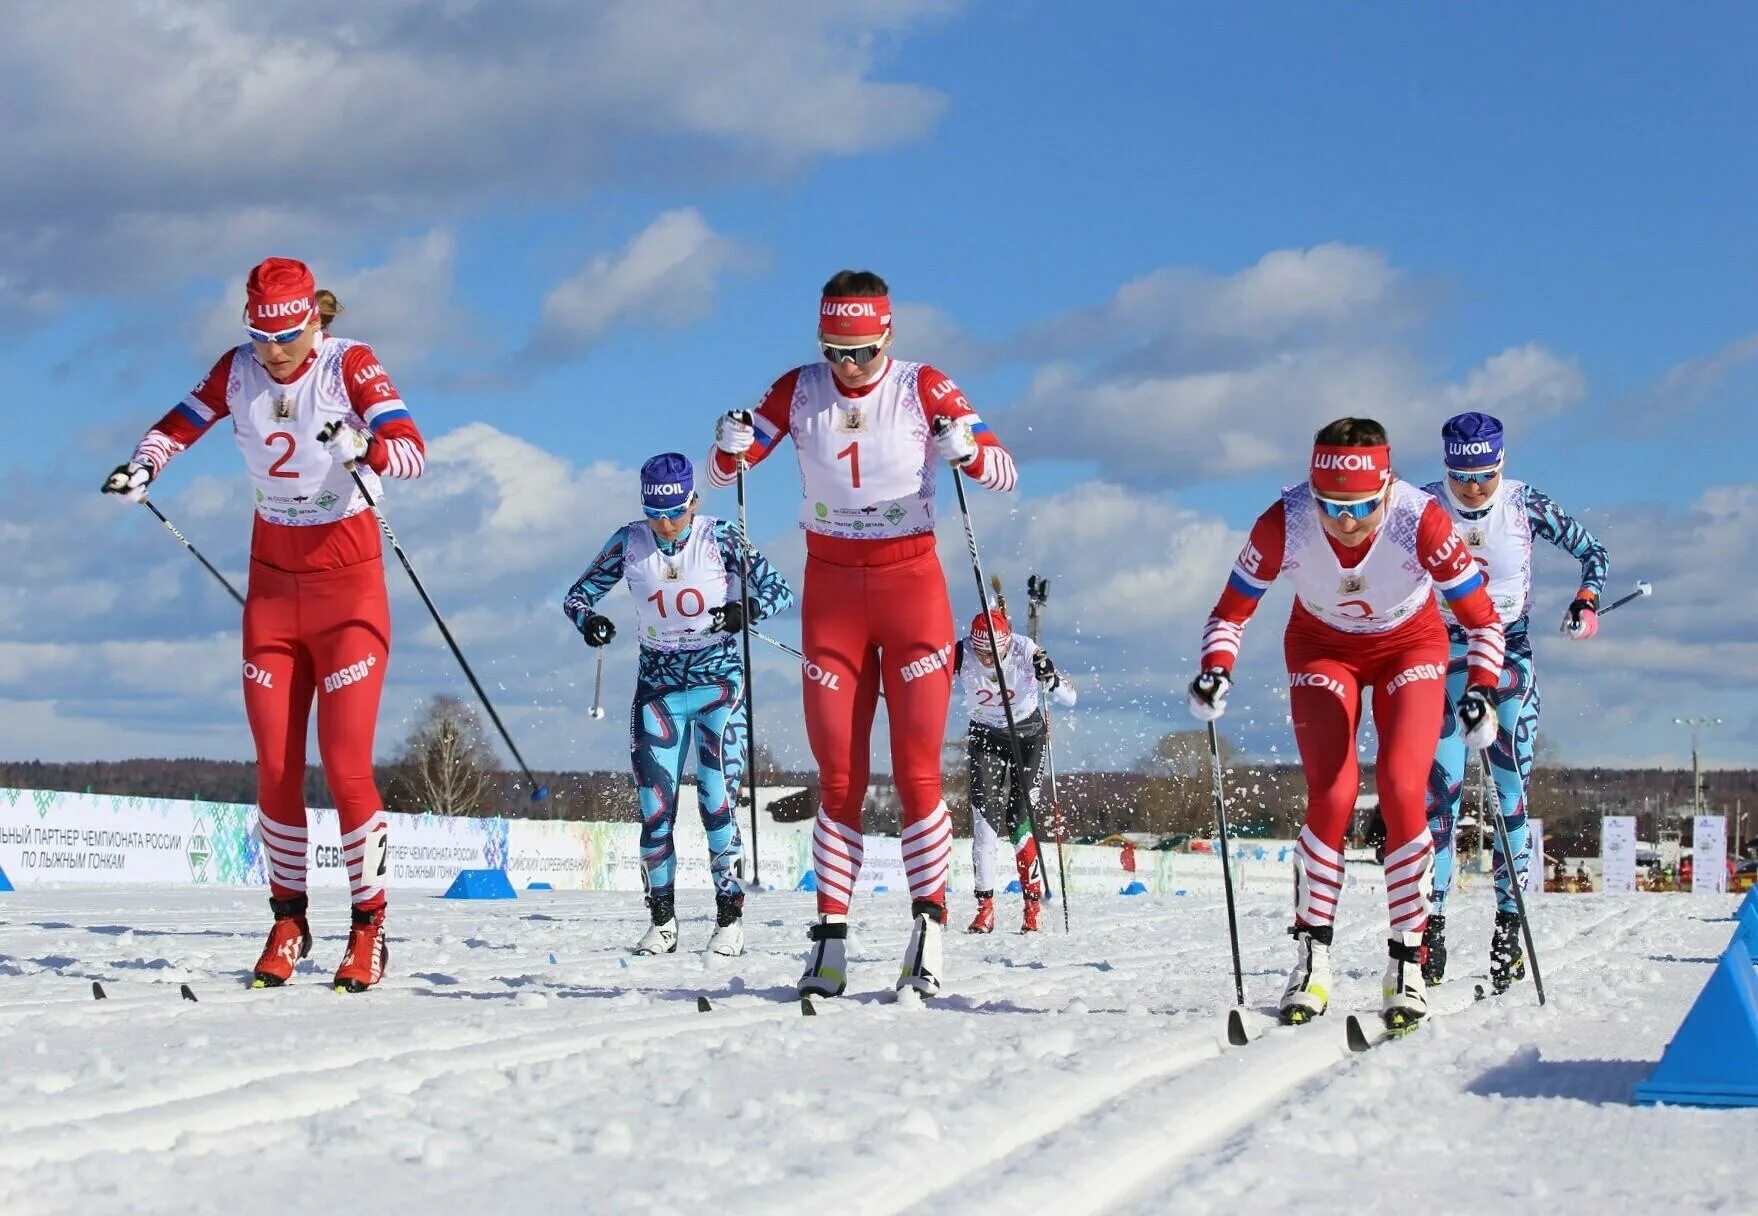 Вошли четверо. Группа Сорина лыжные гонки. Группа Сорина лыжные гонки в Раубичах 2022г. Группа Егора Сорина лыжи. Лыжные гонки Россия.